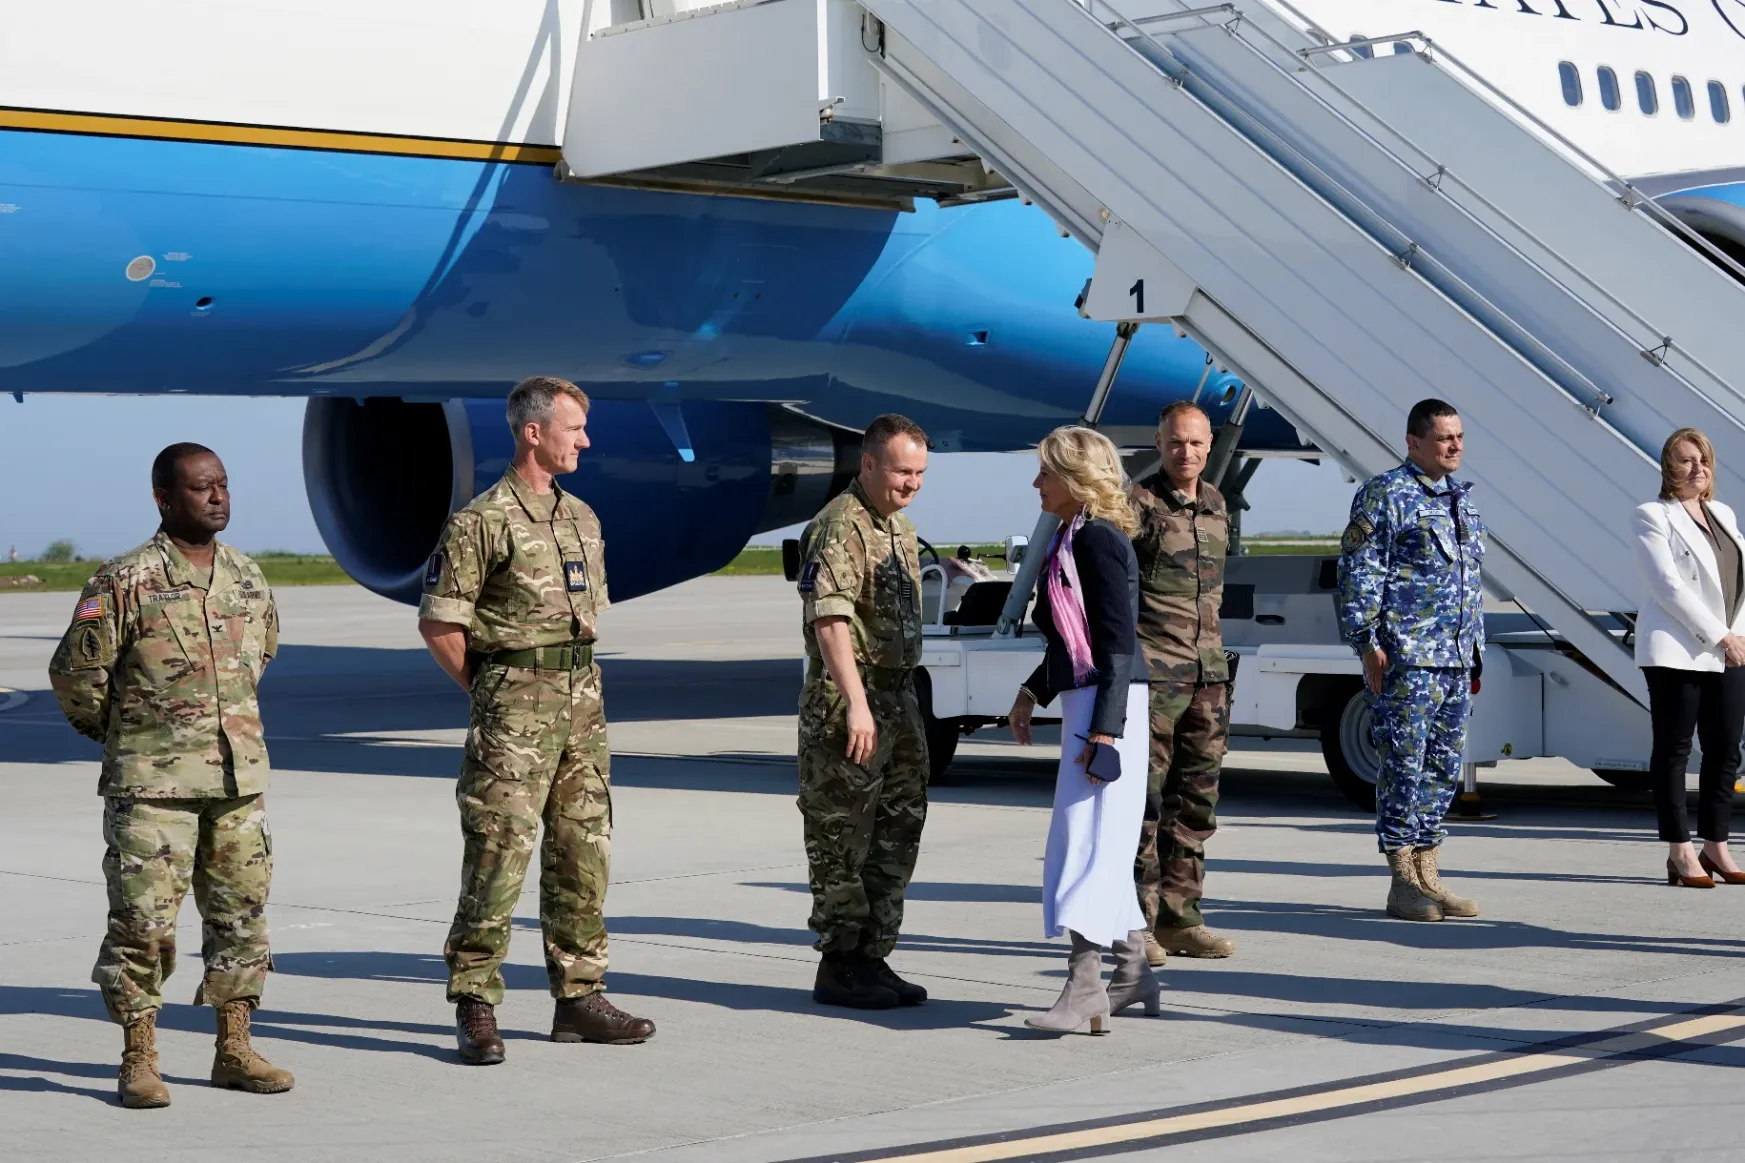 Megérkezett: elkezdődött Jill Biden romániai látogatása